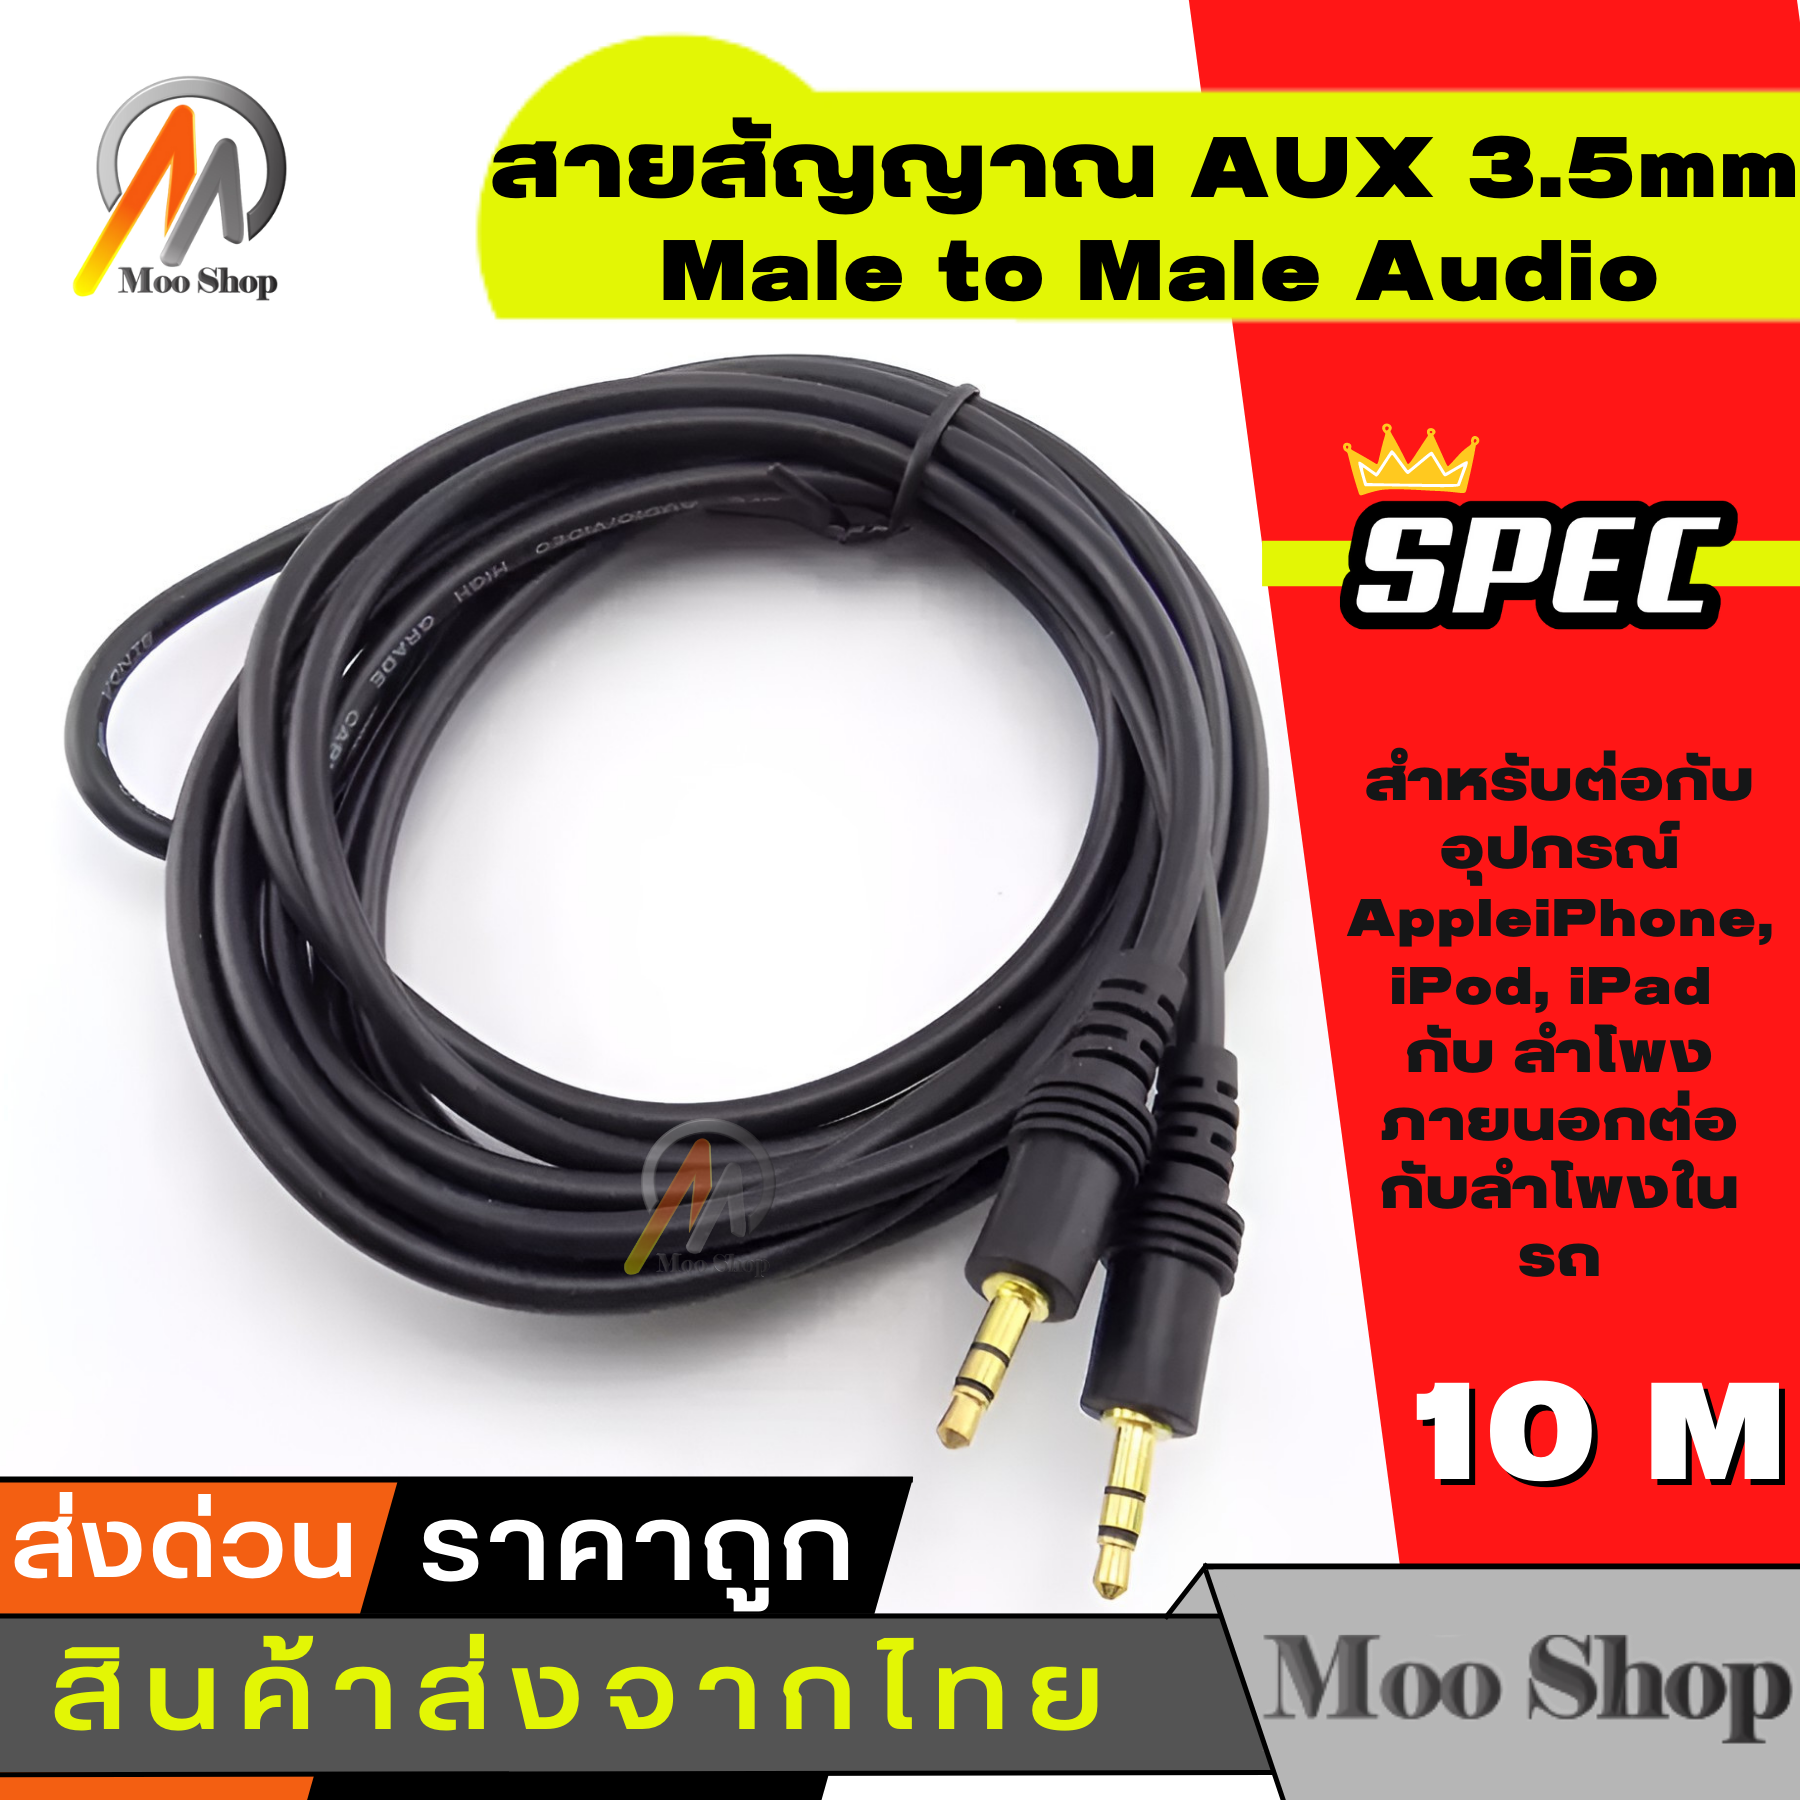 เกี่ยวกับ สายสัญญาณ ออดิโอ (AUX) 3.5mm หัว ผู้-ผู้ , สายแจ็ค3.5mm(Male to Male Audio Cable Stereo Aux Cable Cord) ยาว 10 เมตร